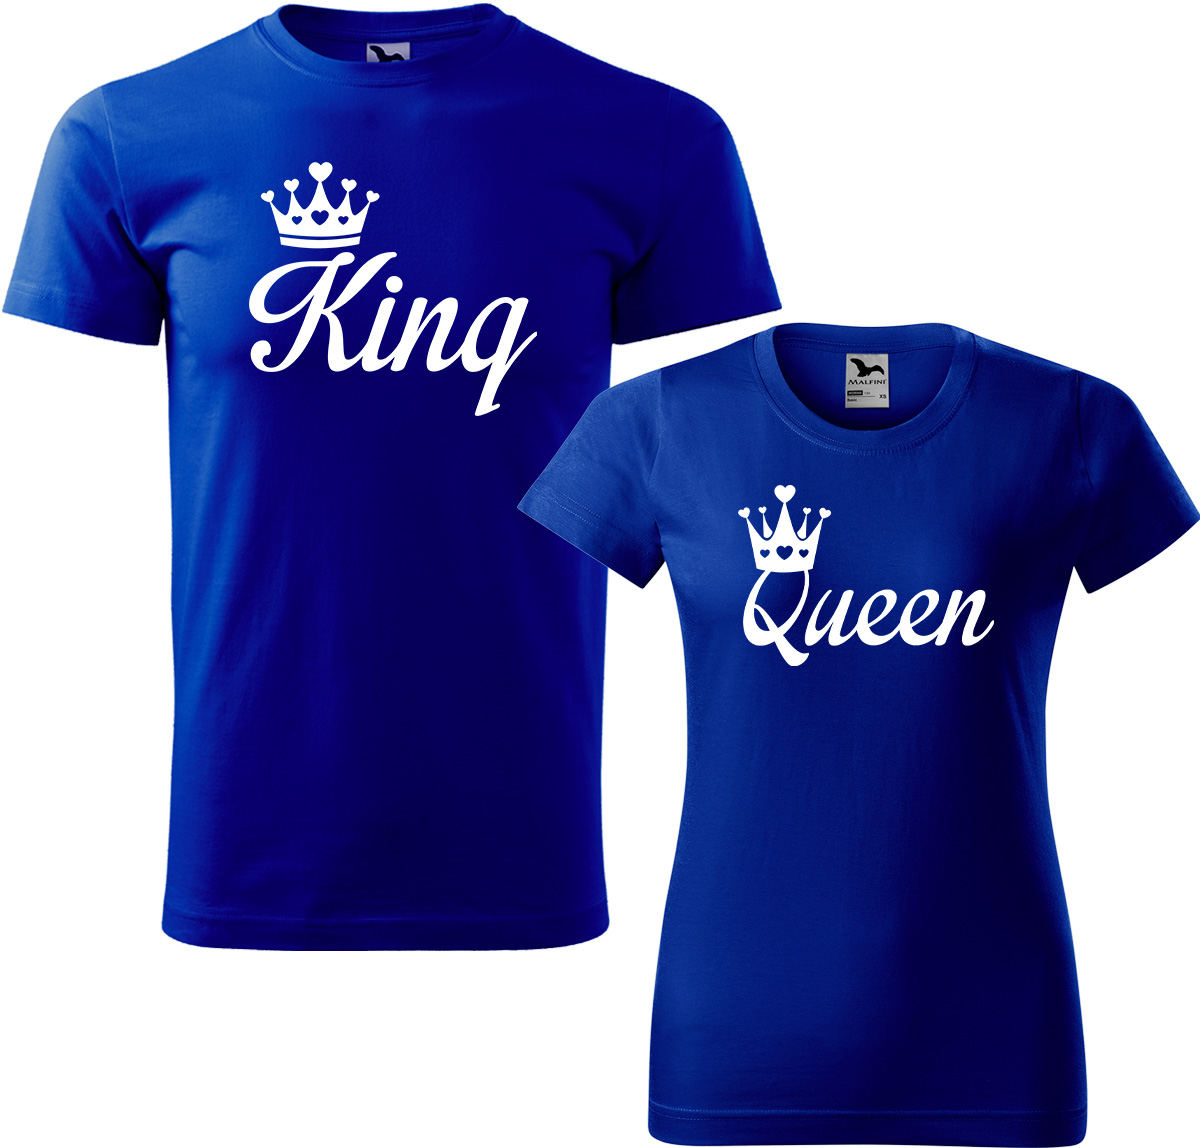 Trička pro páry - King a queen Barva: Královská modrá (05), Velikost dámské tričko: S, Velikost pánské tričko: XL